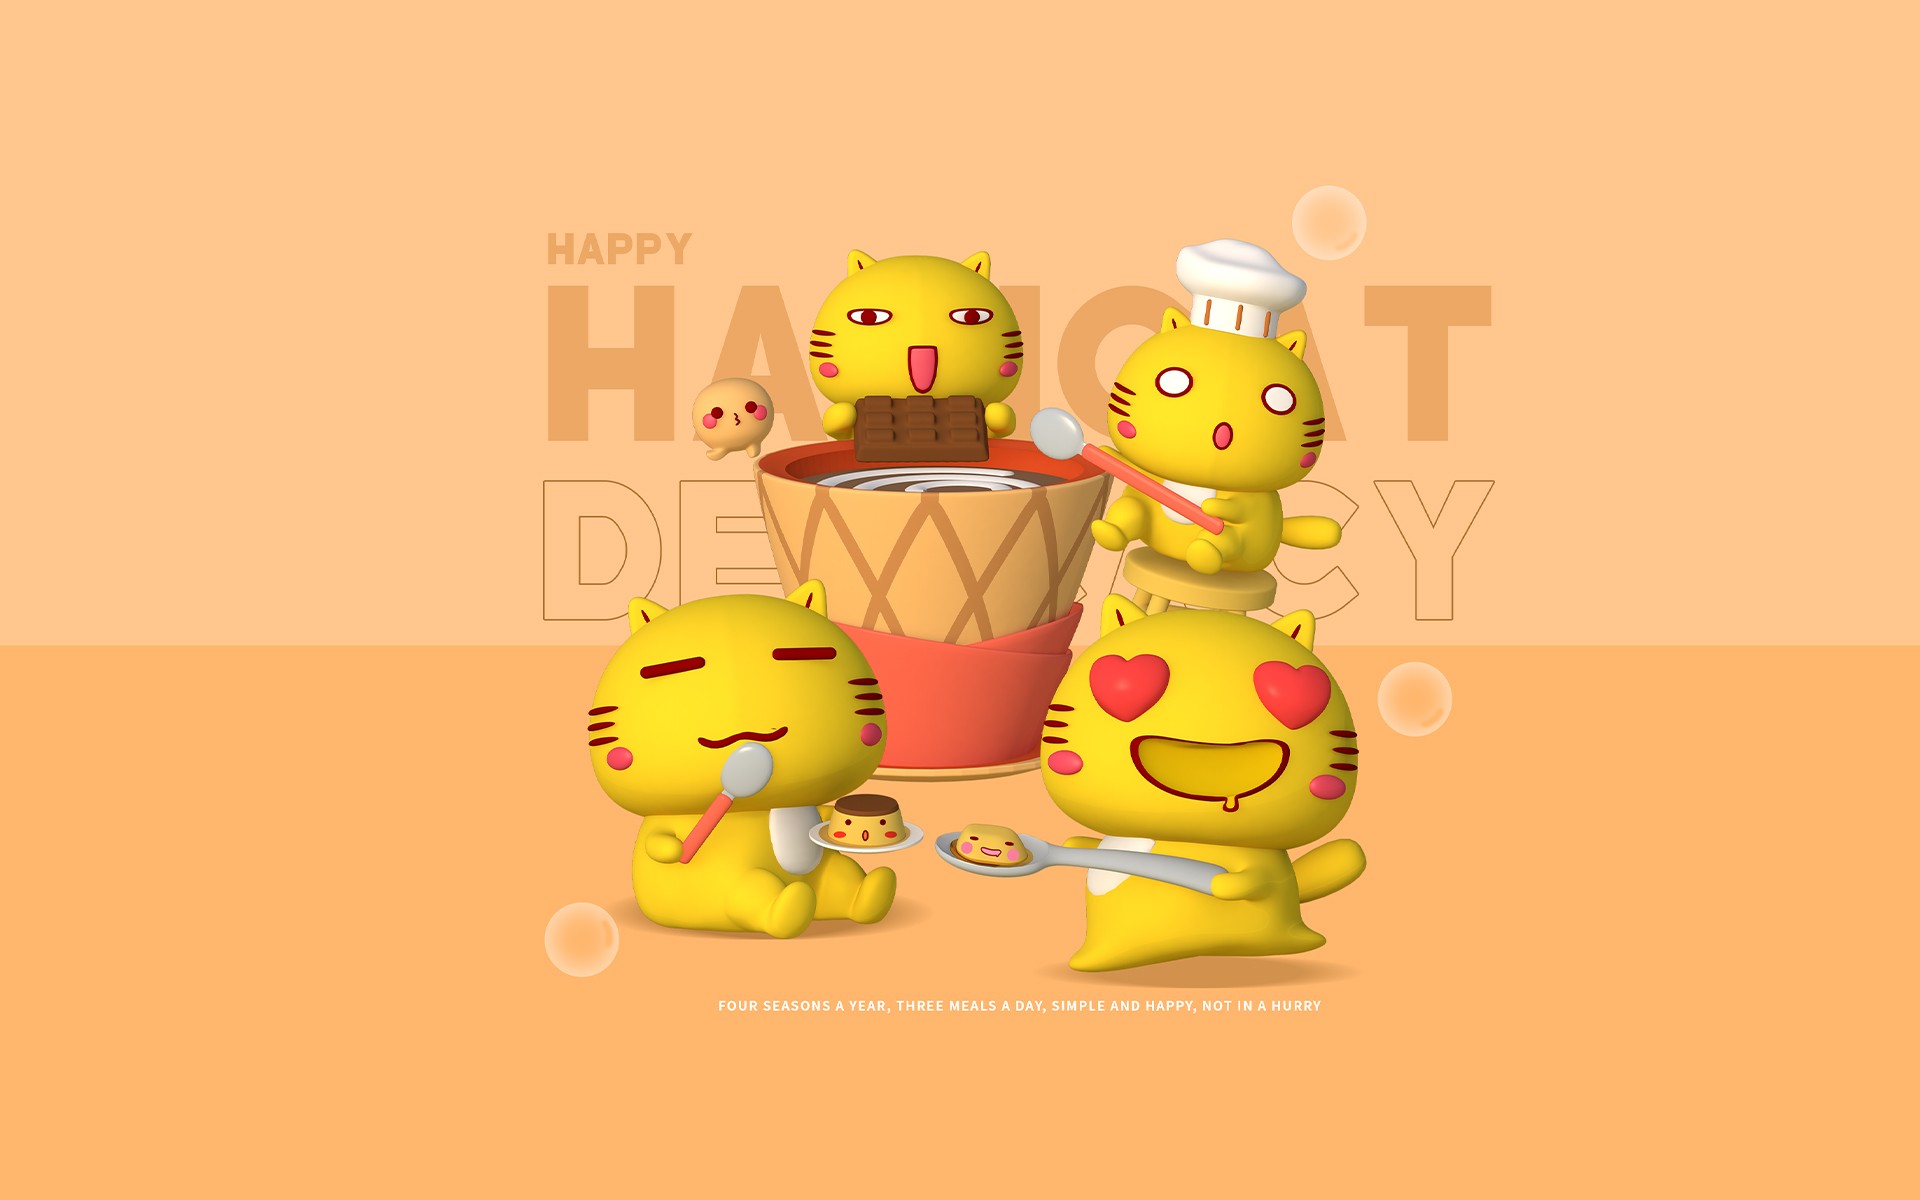 Hamicat哈咪猫3D纯色背景爱甜品主题卡通图片